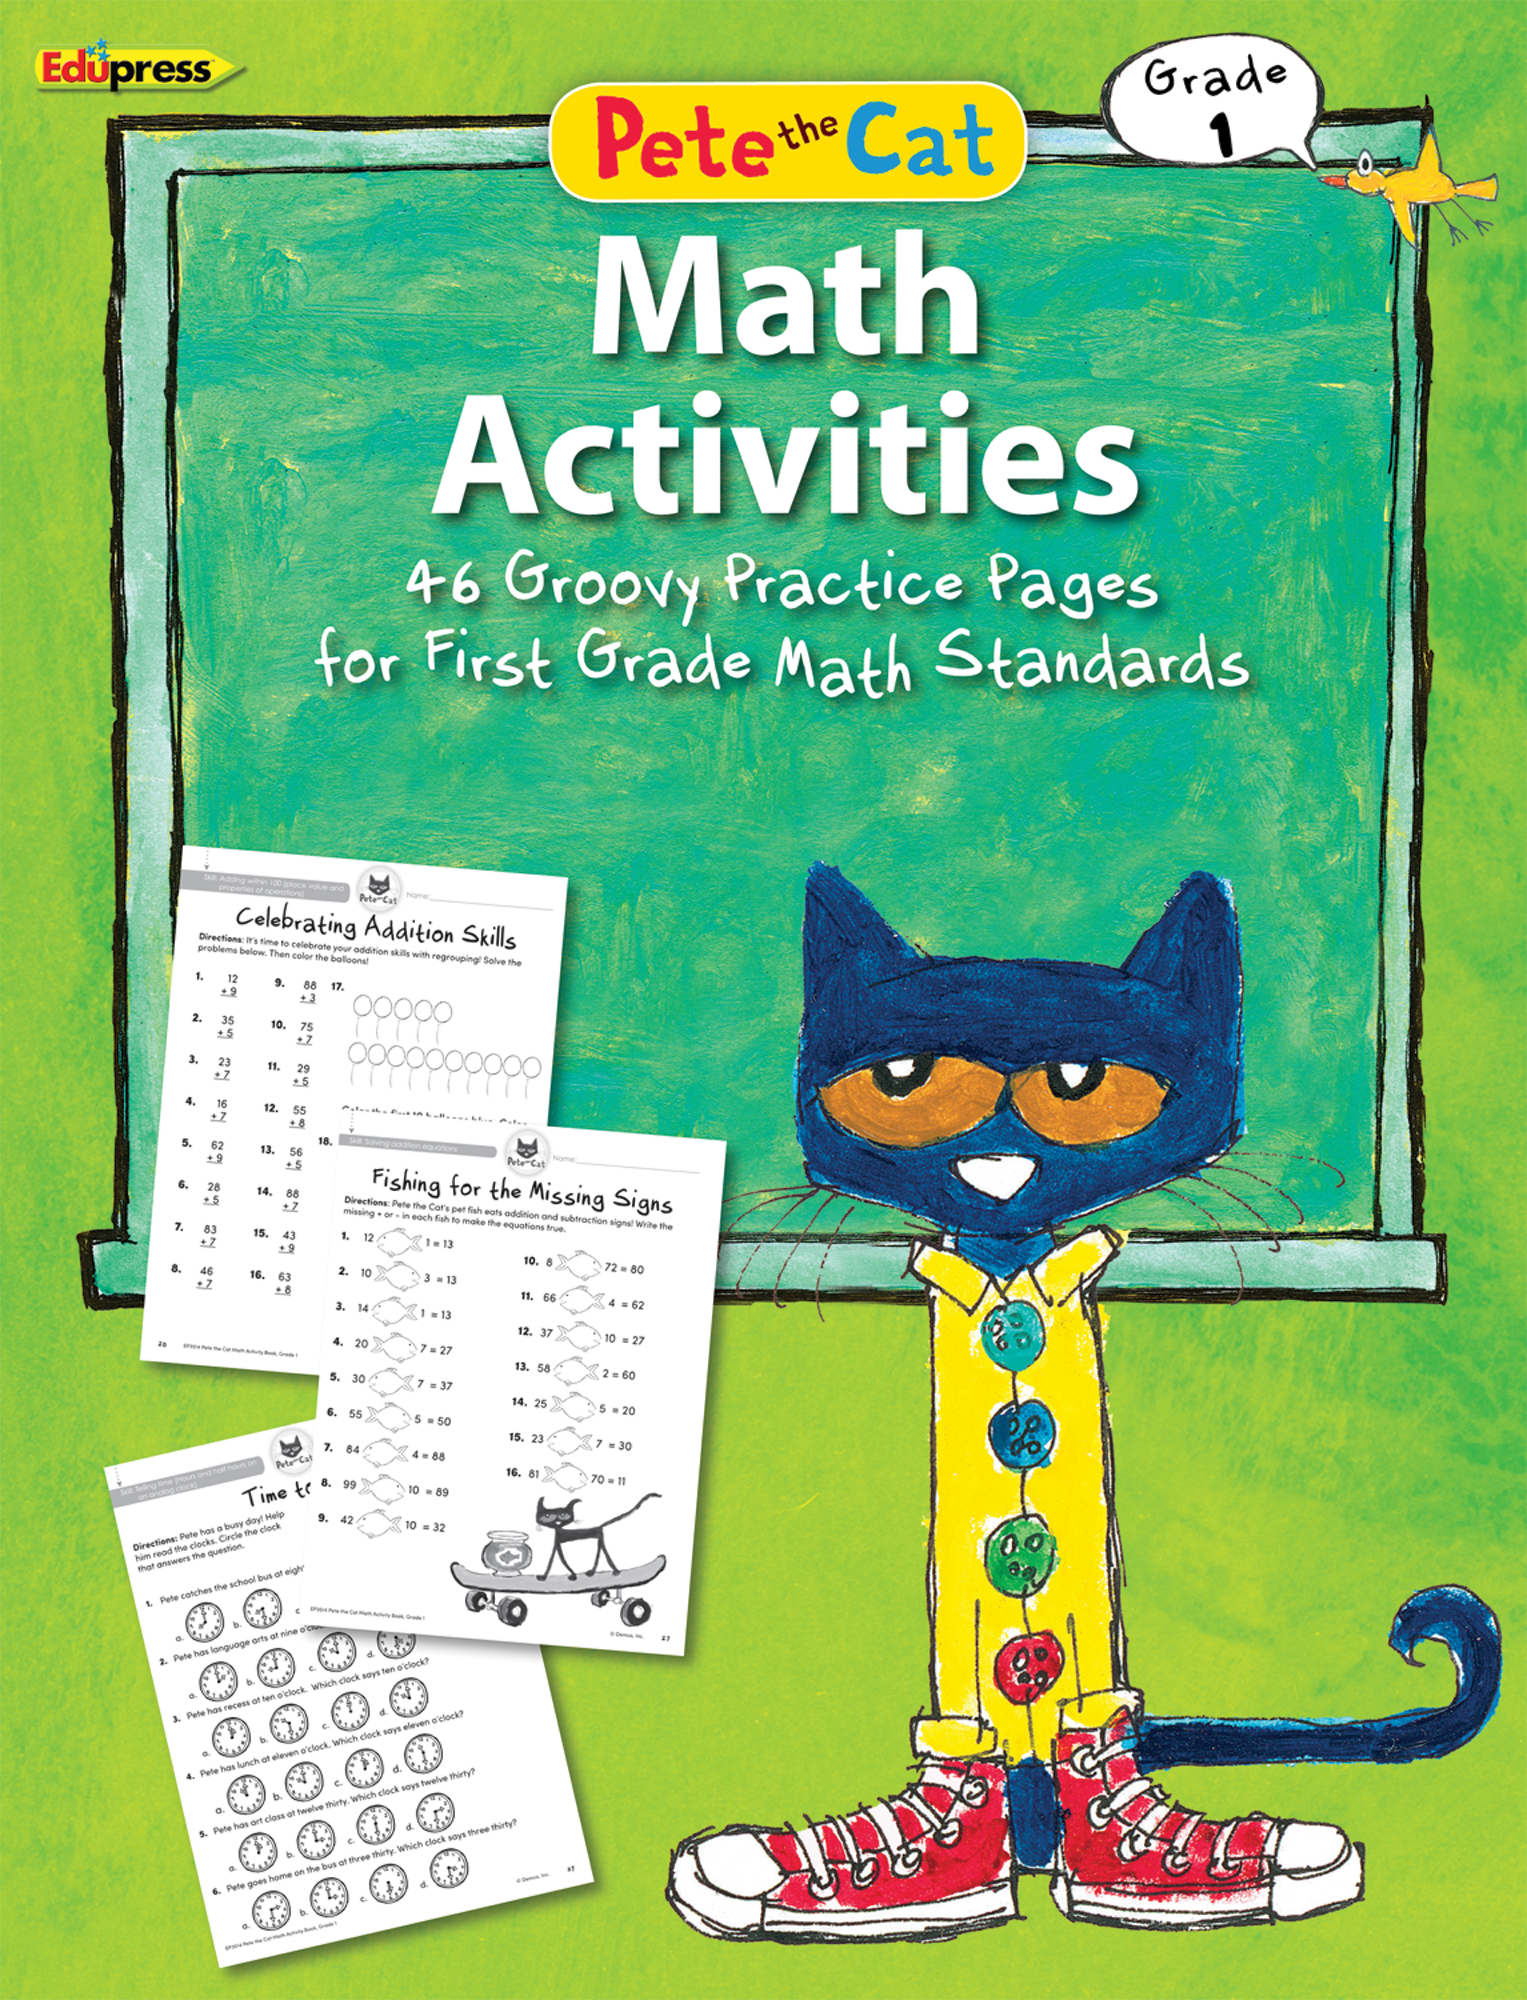 Pete the CatÂ® Math Activities (Gr. 1)